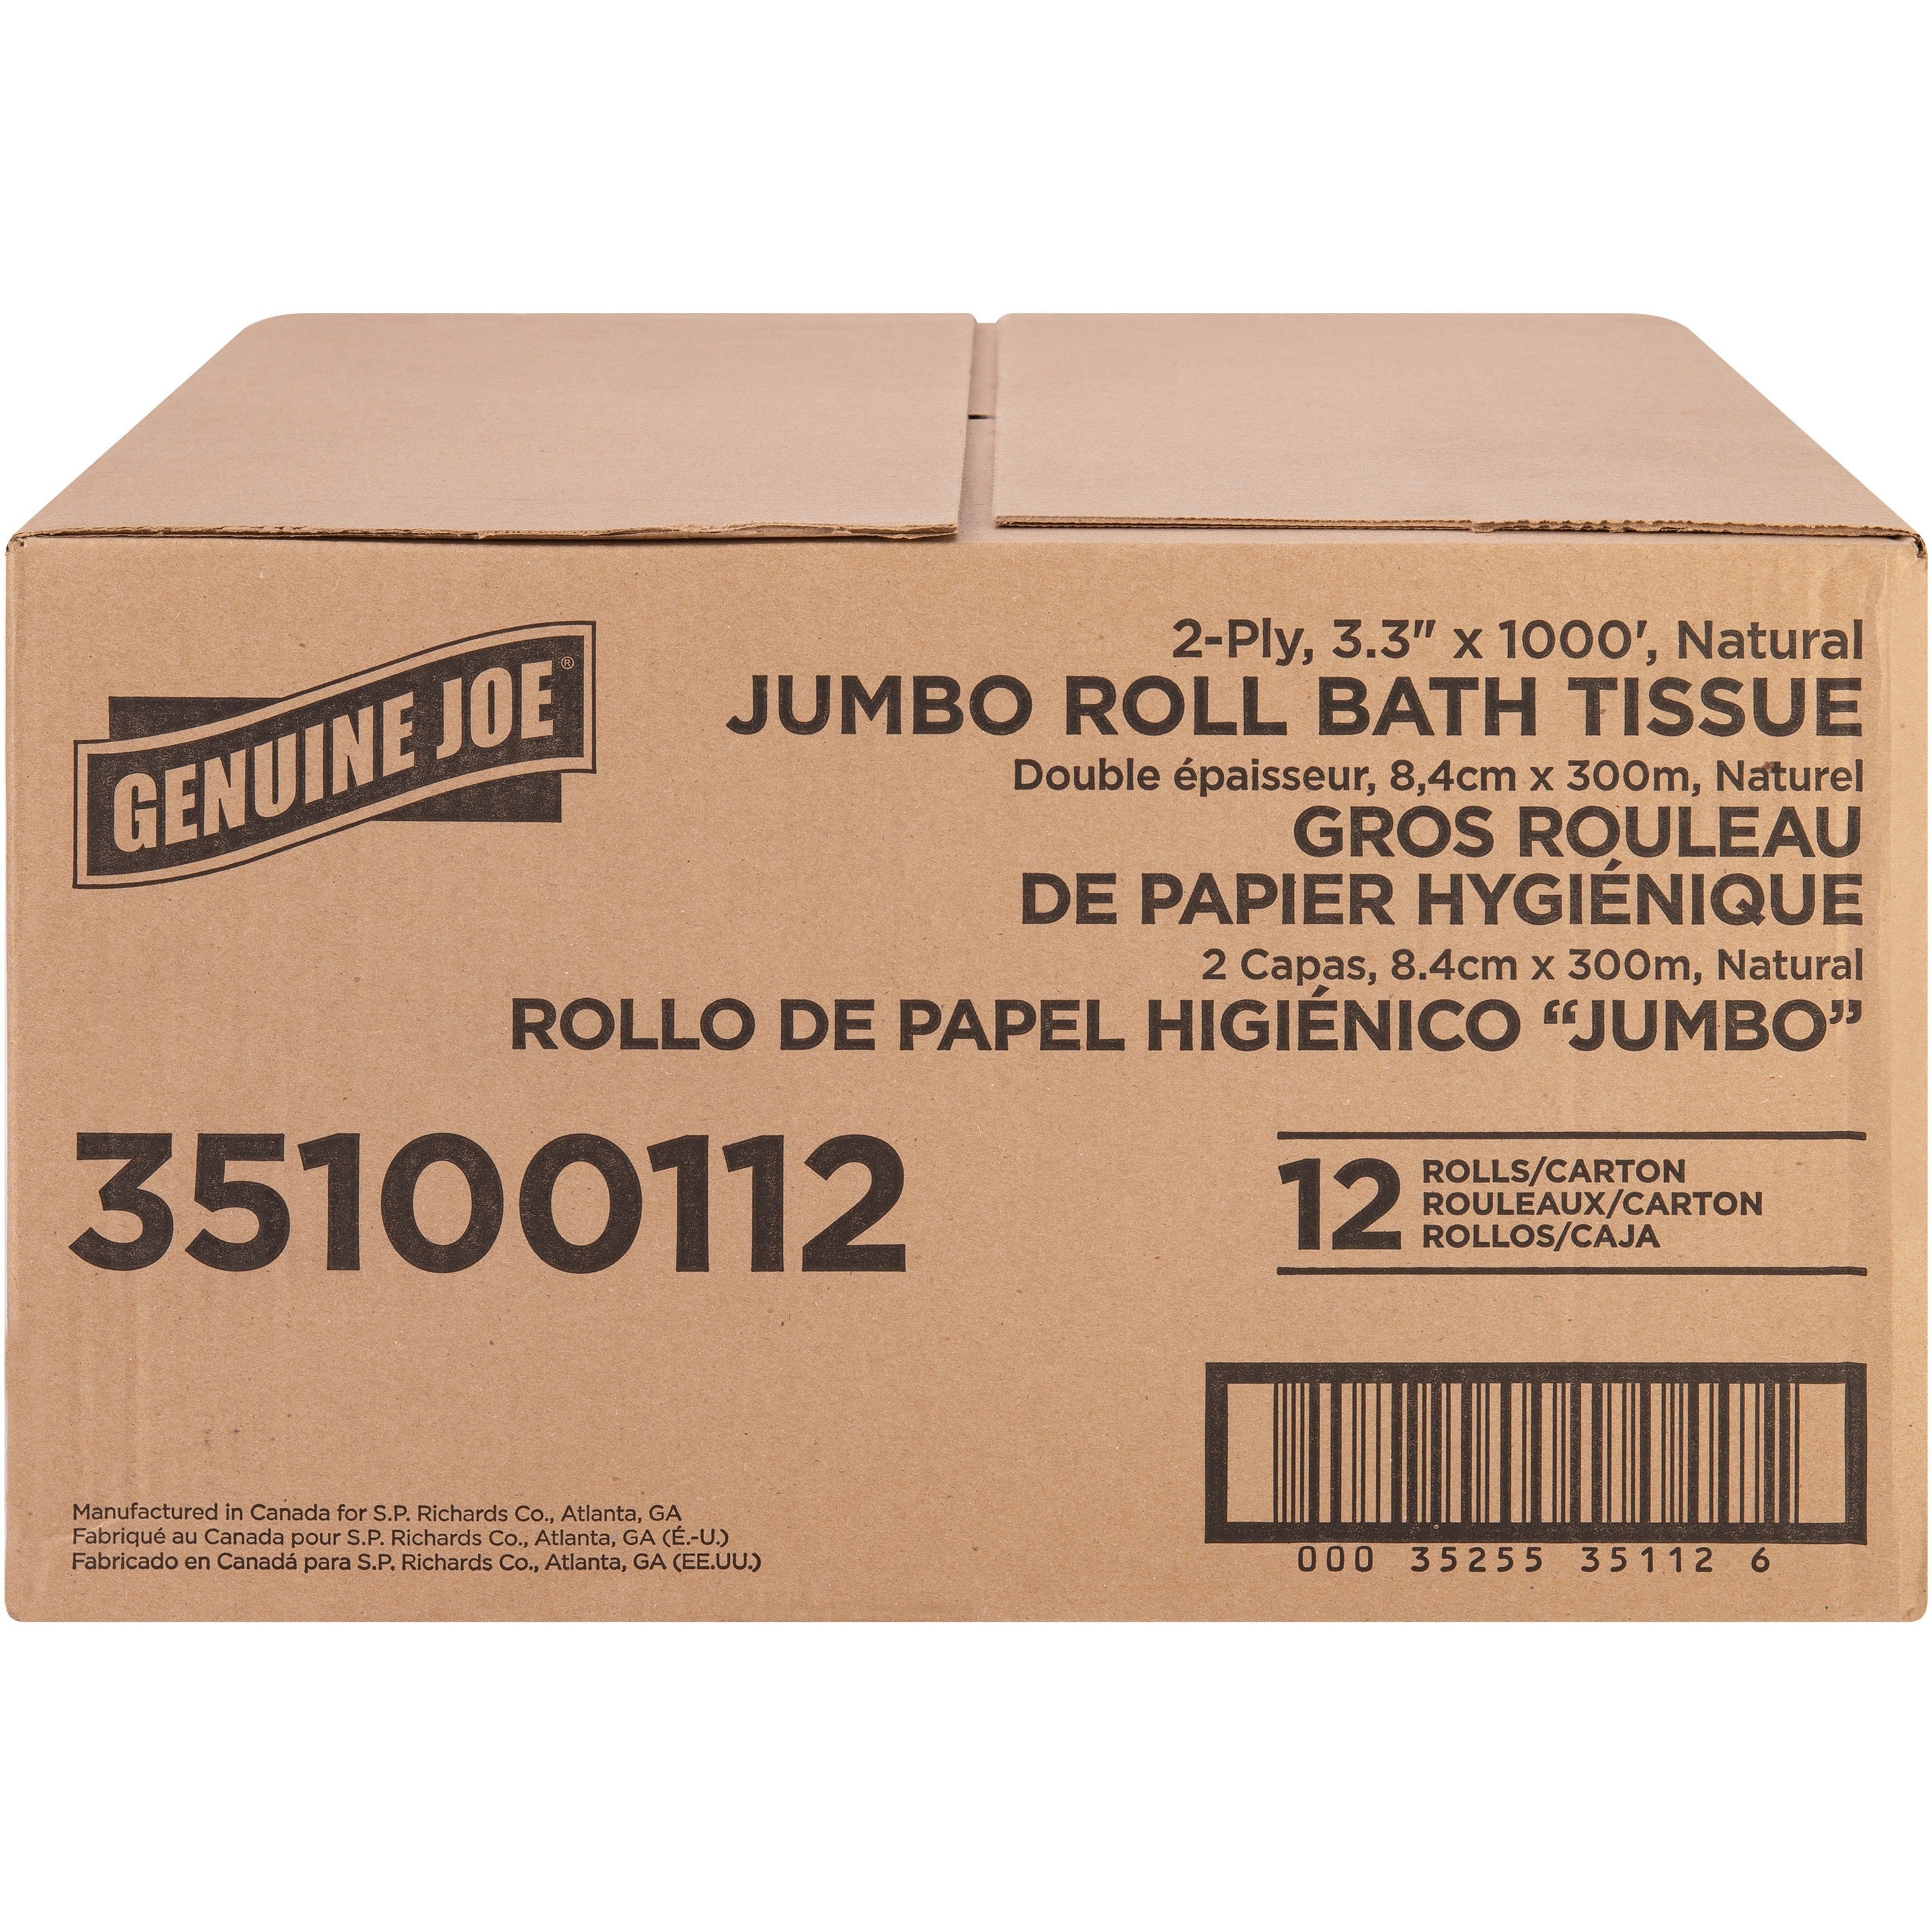 genuine-joe-jumbo-jr-dispenser-bath-tissue-roll-2-ply-330-x-1000-ft-888-roll-diameter-white-fiber-sewer-safe-septic-safe-for-bathroom-12-carton_gjo35100112 - 3